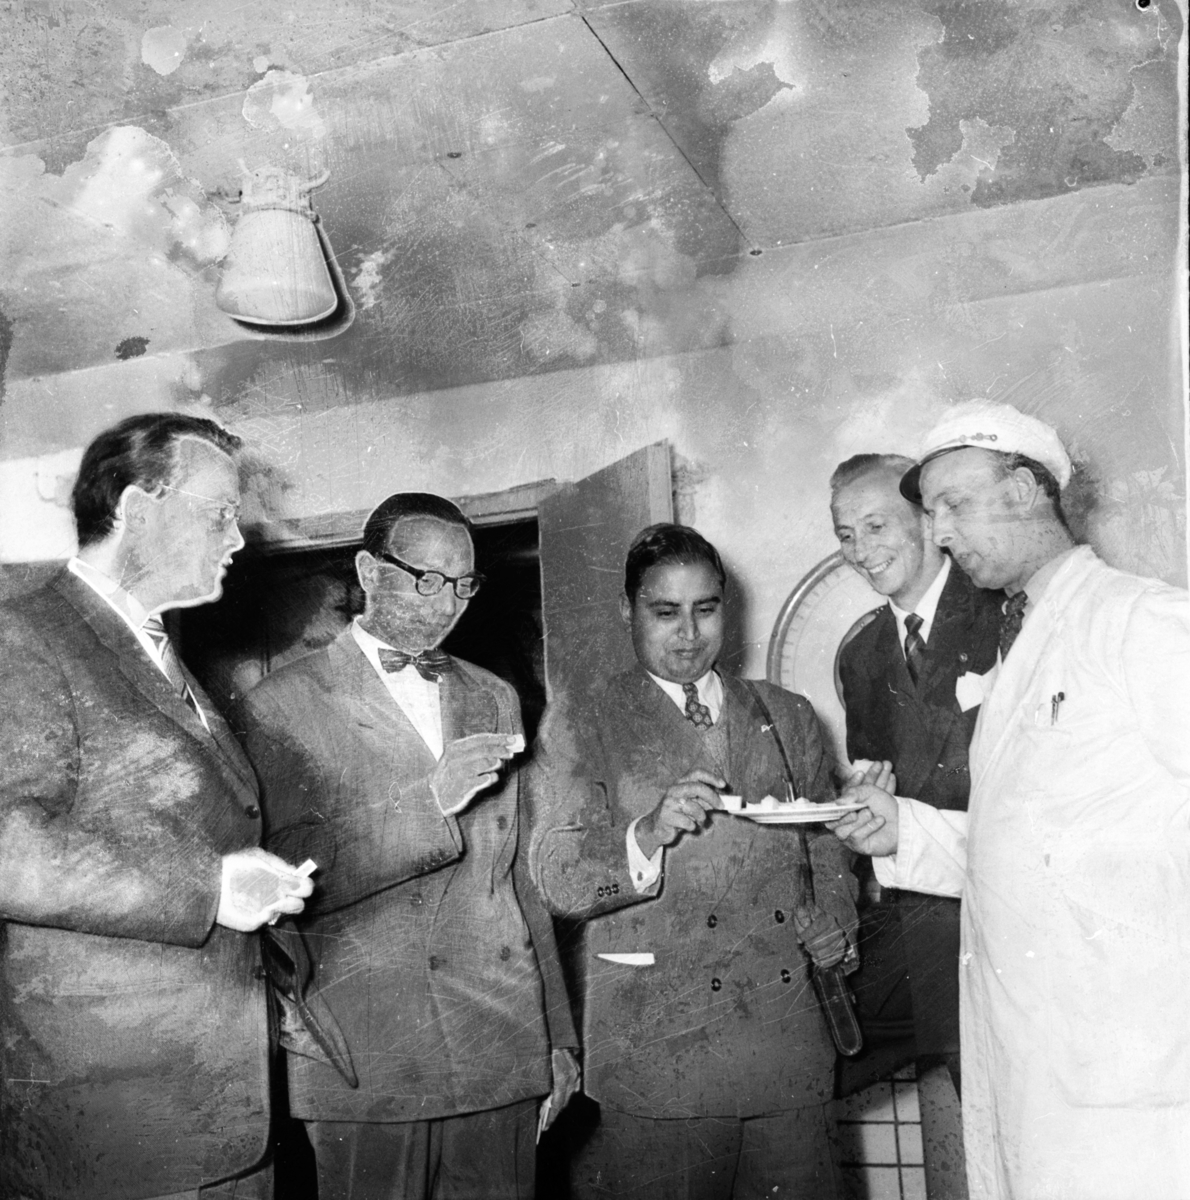 Mejeriet. Indier på besök.
Juni 1956